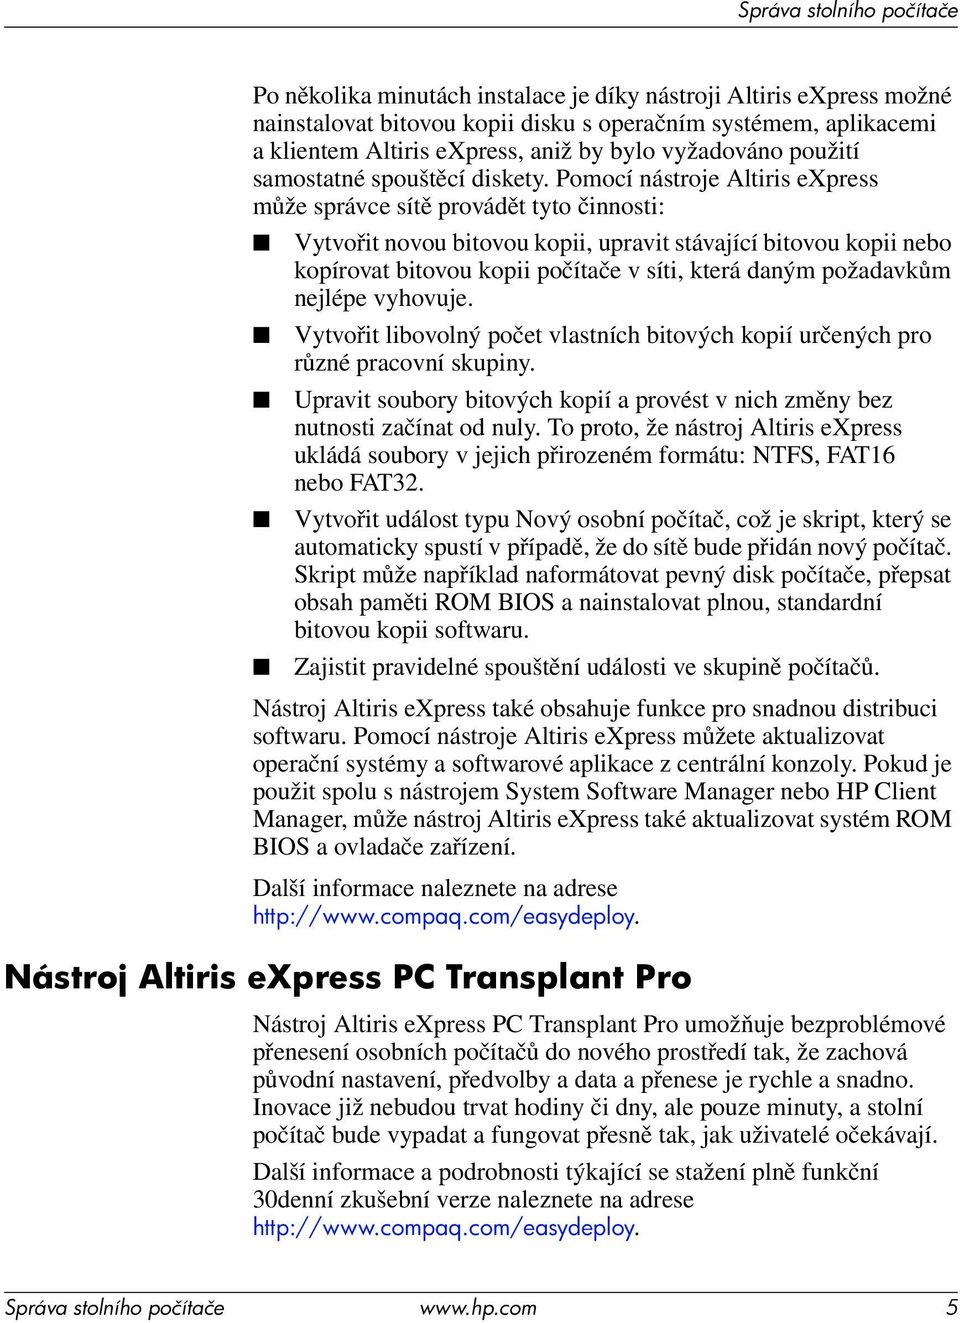 Pomocí nástroje Altiris express může správce sítě provádět tyto činnosti: Vytvořit novou bitovou kopii, upravit stávající bitovou kopii nebo kopírovat bitovou kopii počítače v síti, která daným